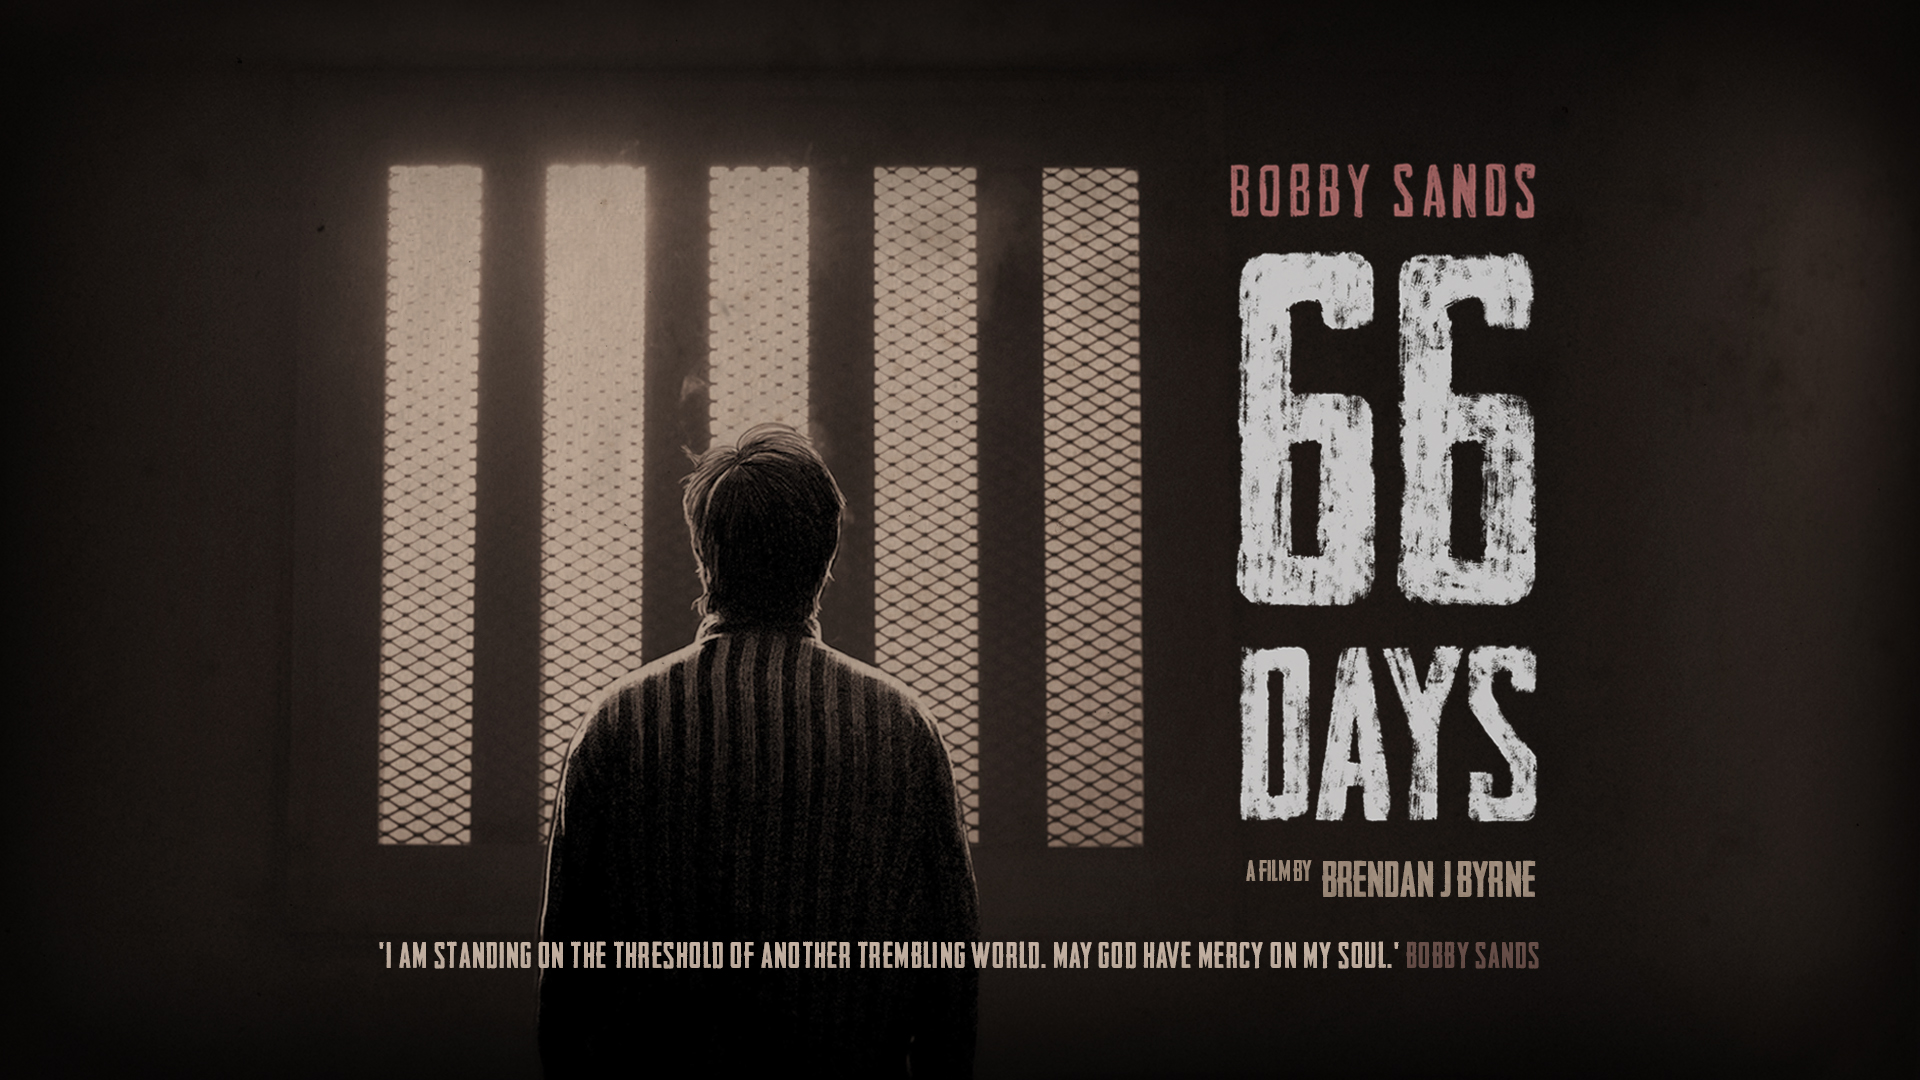 Scannain Talks - Bobby Sands: 66 Days with Brendan J Byrne